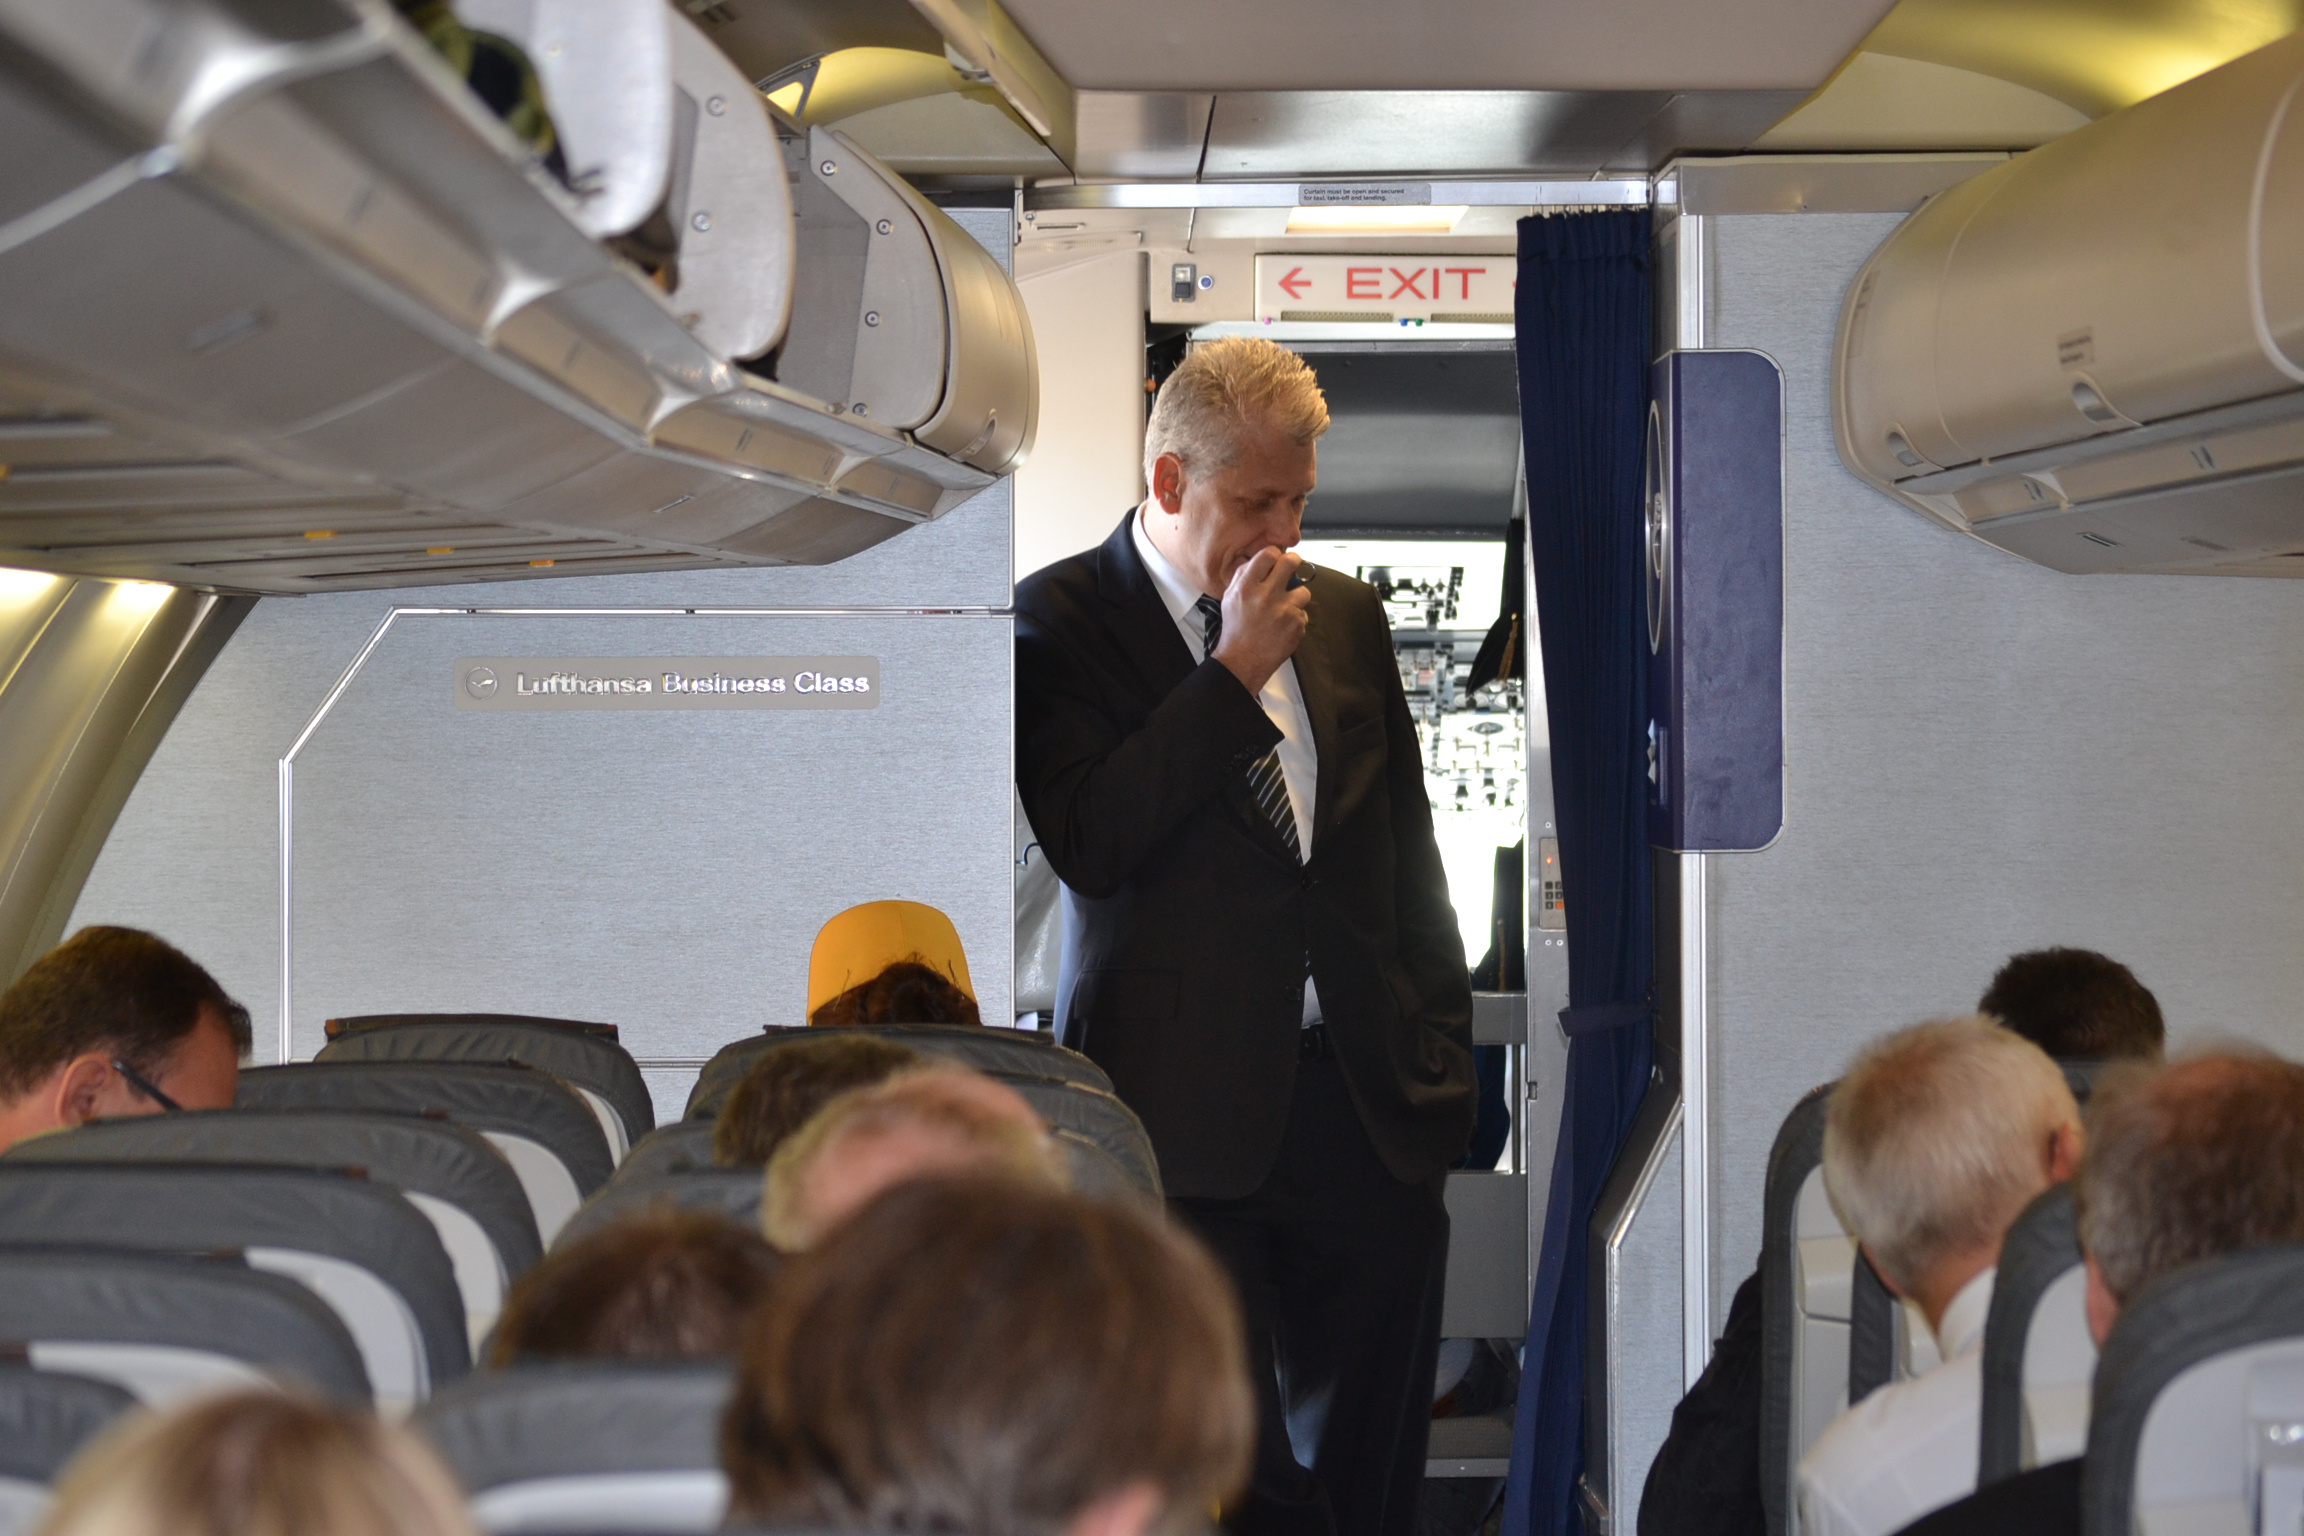 Rögtönzött sajtótájékoztató a levegőben, tartja Harry Hohmeister, a Lufthansa igazgatótanácsának tagja